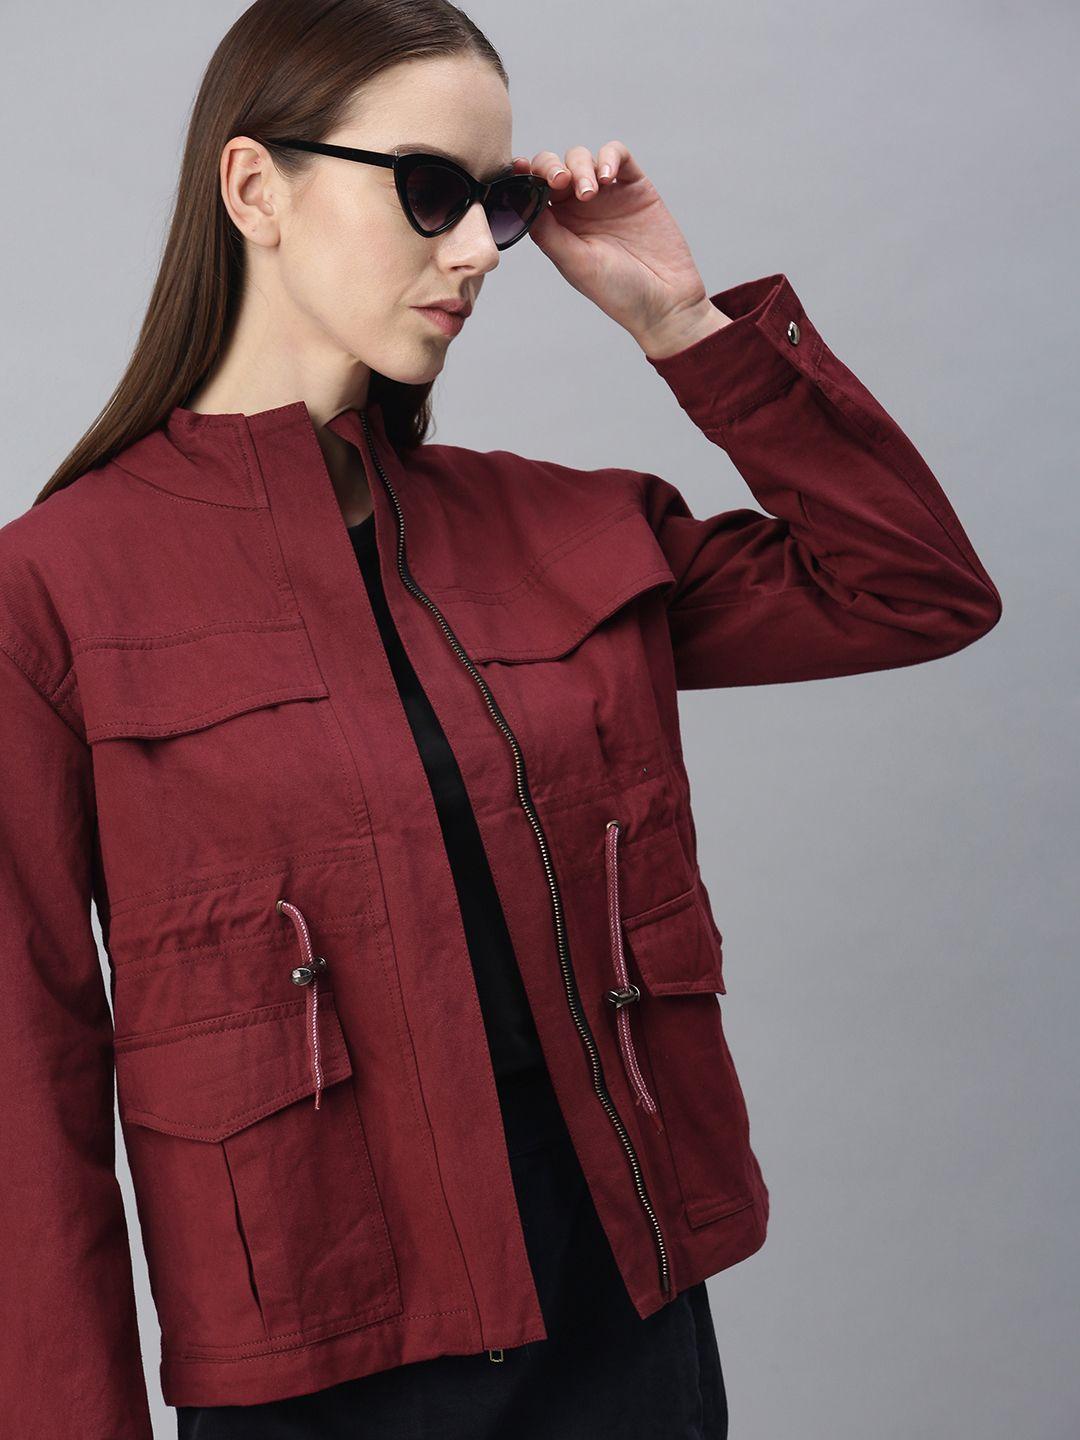 voxati-women-maroon-denim-jacket